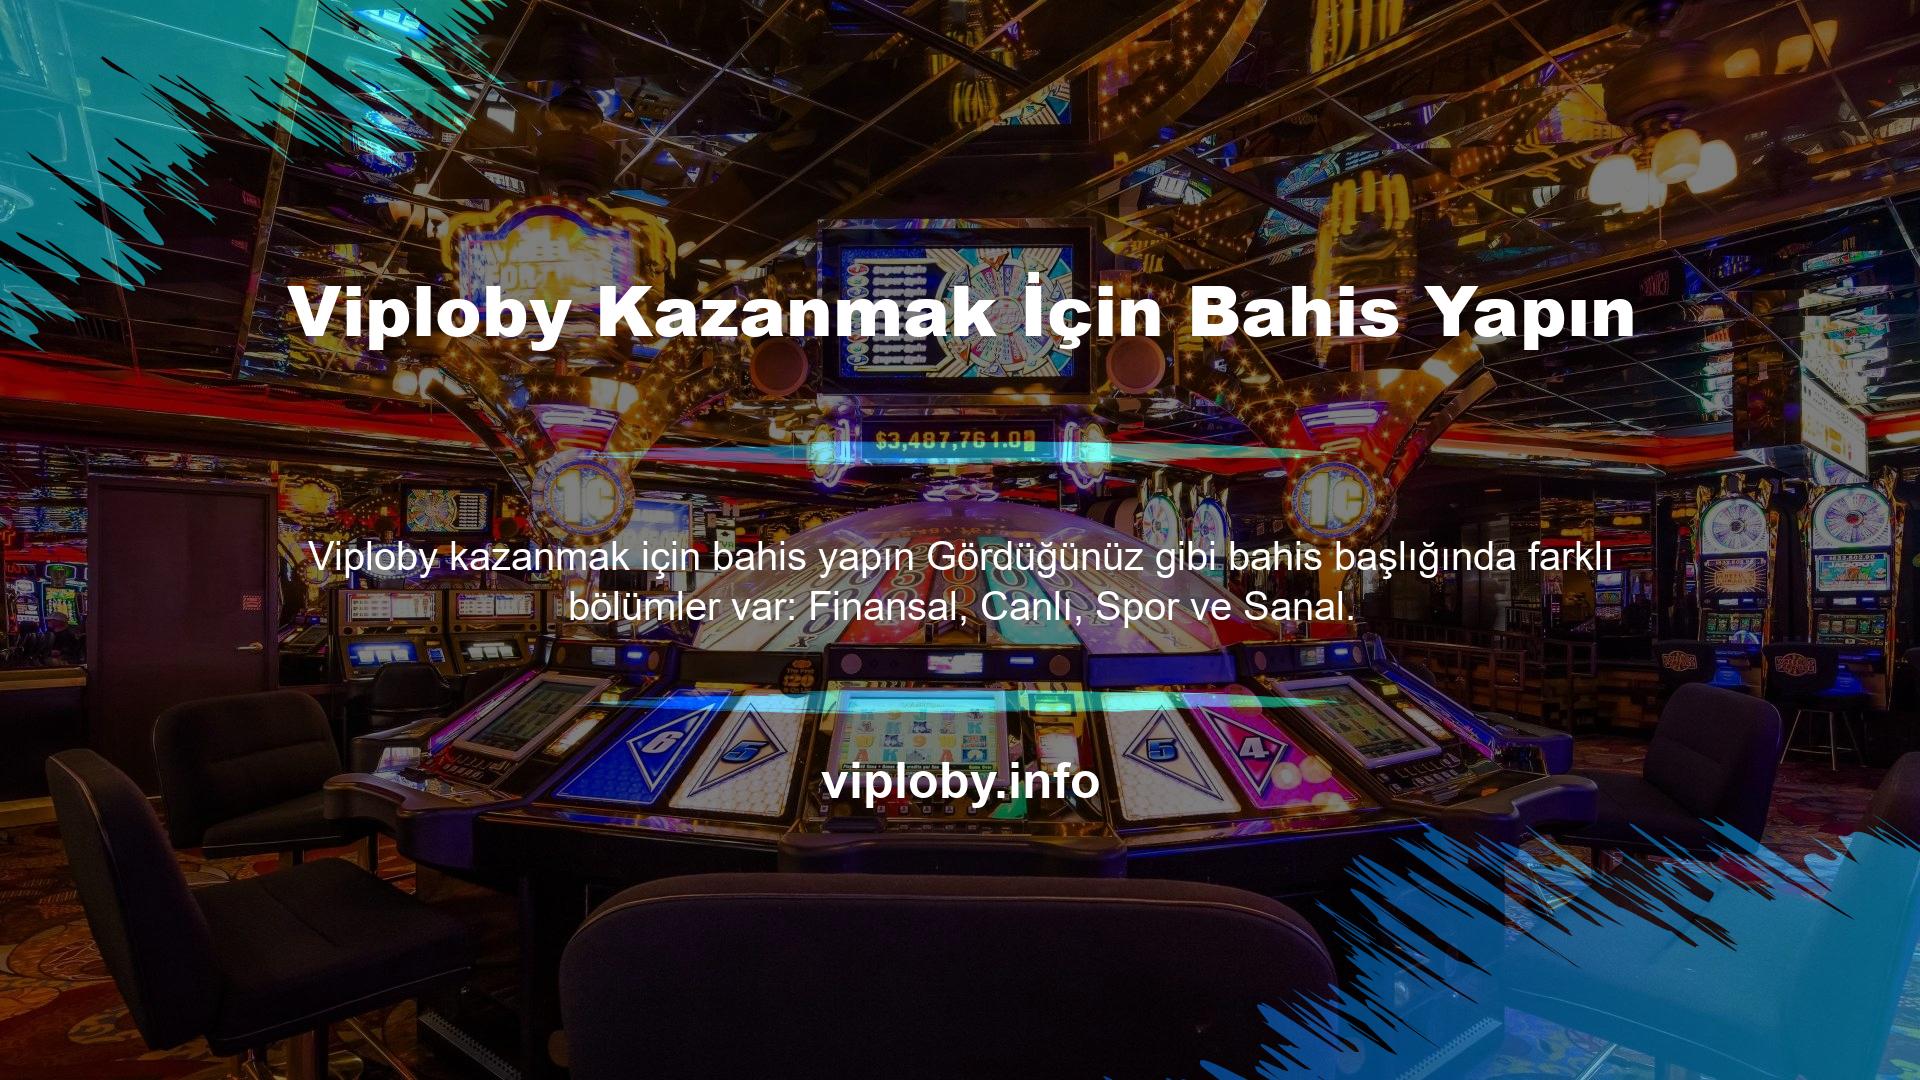 Viploby web sitesi, tüm oyuncular için mutlaka ziyaret edilmesi gereken bir web sitesidir